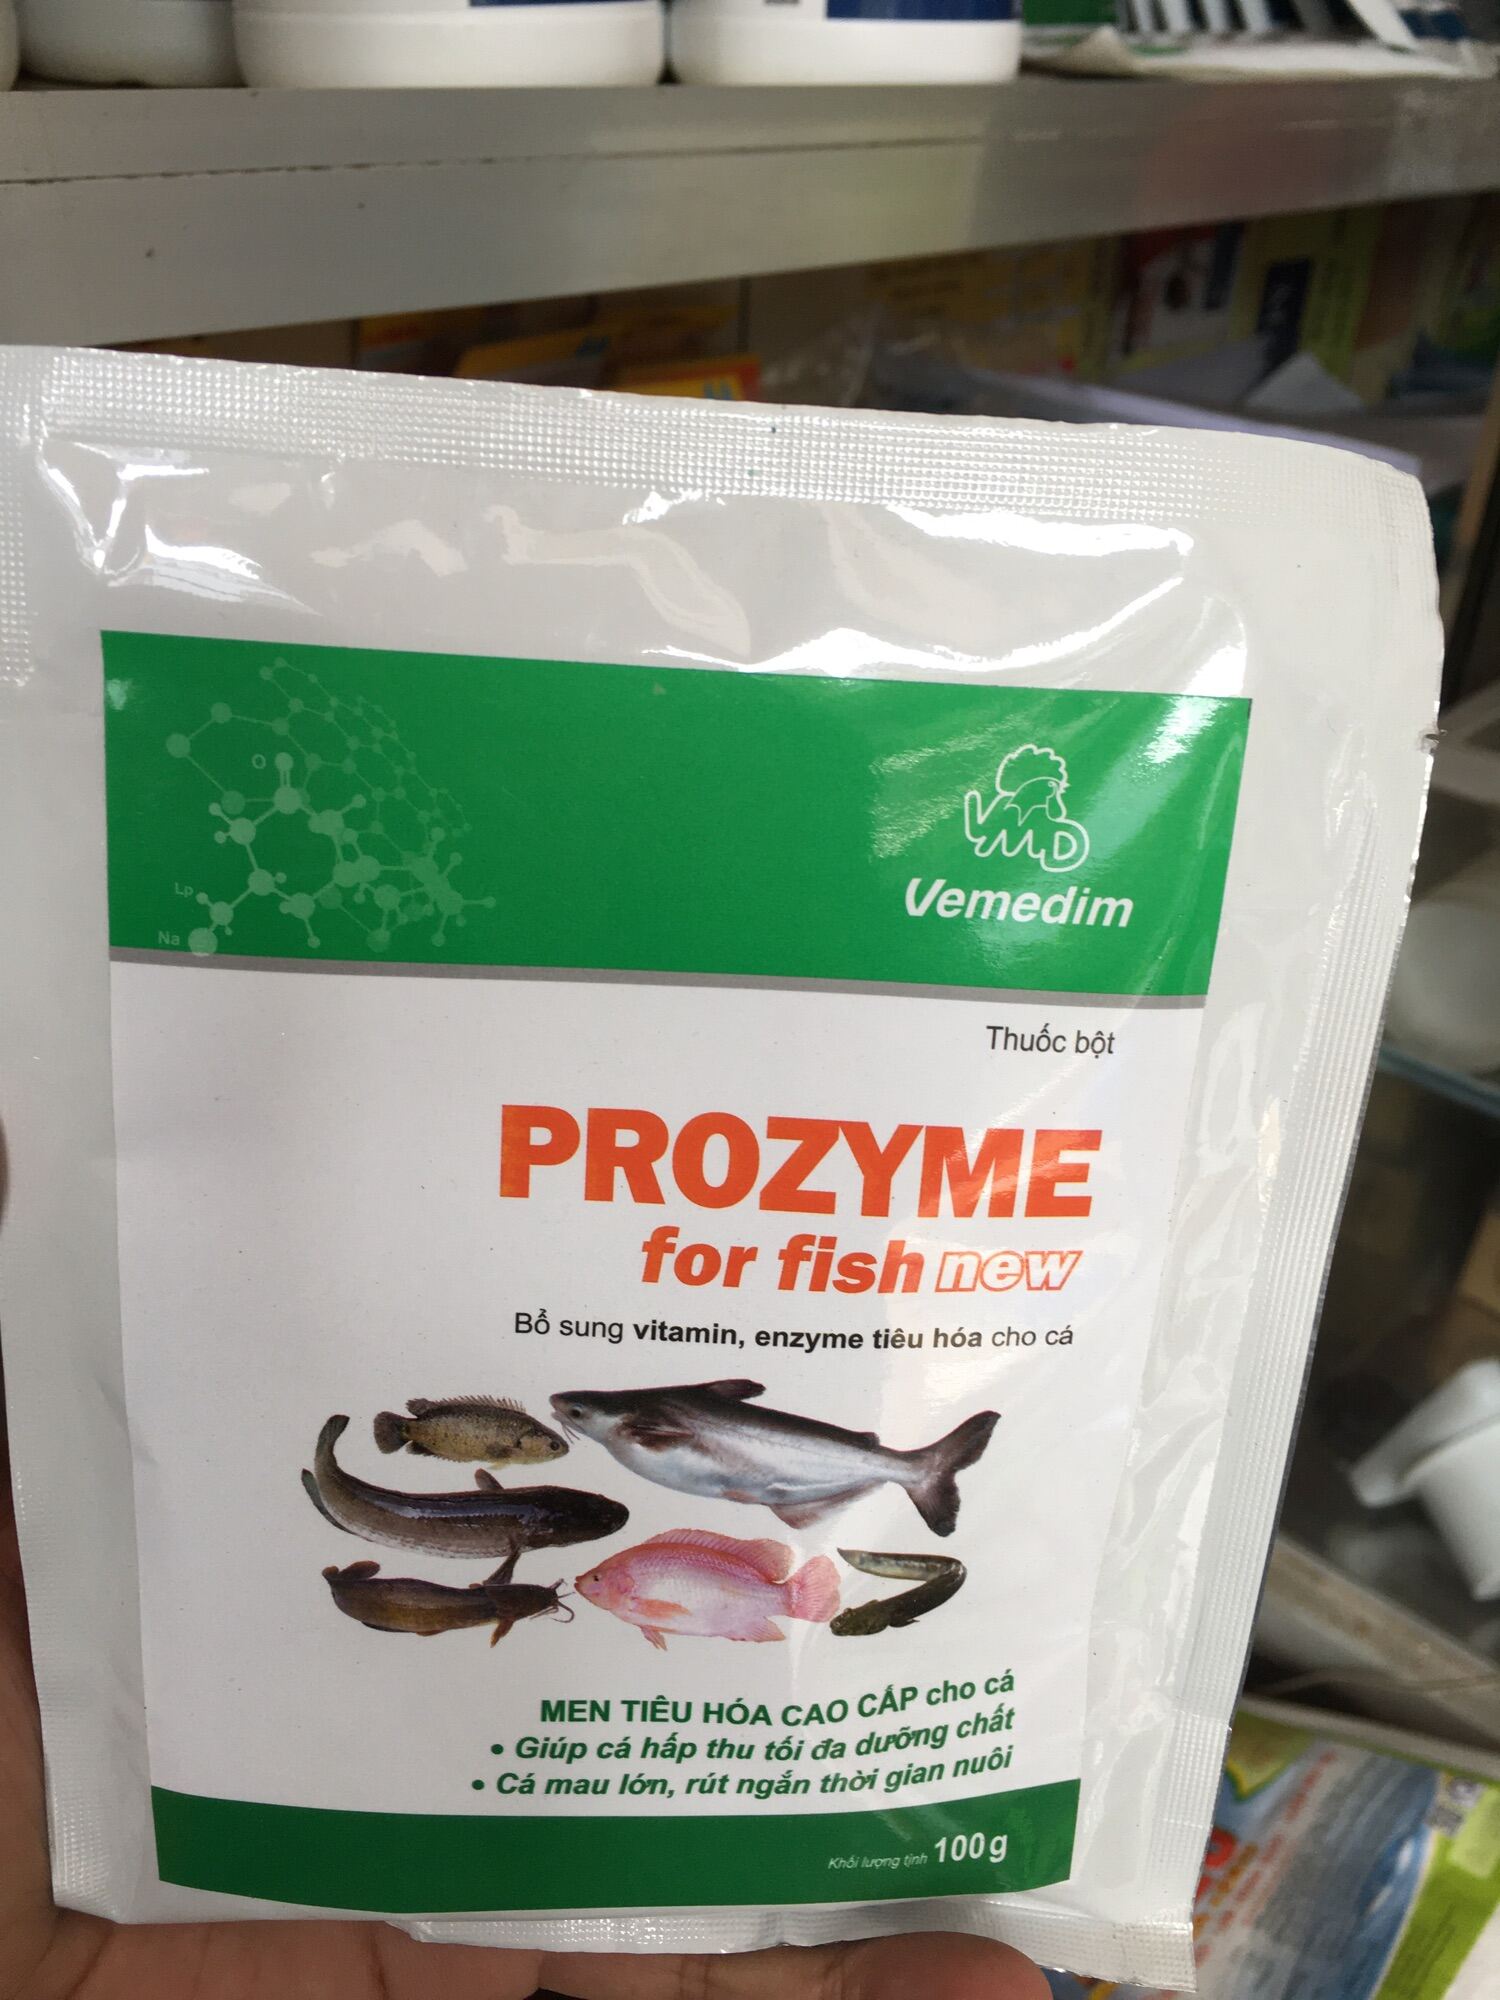 Prozyme for fish new ,men tiêu hoá cao cấp cho cá